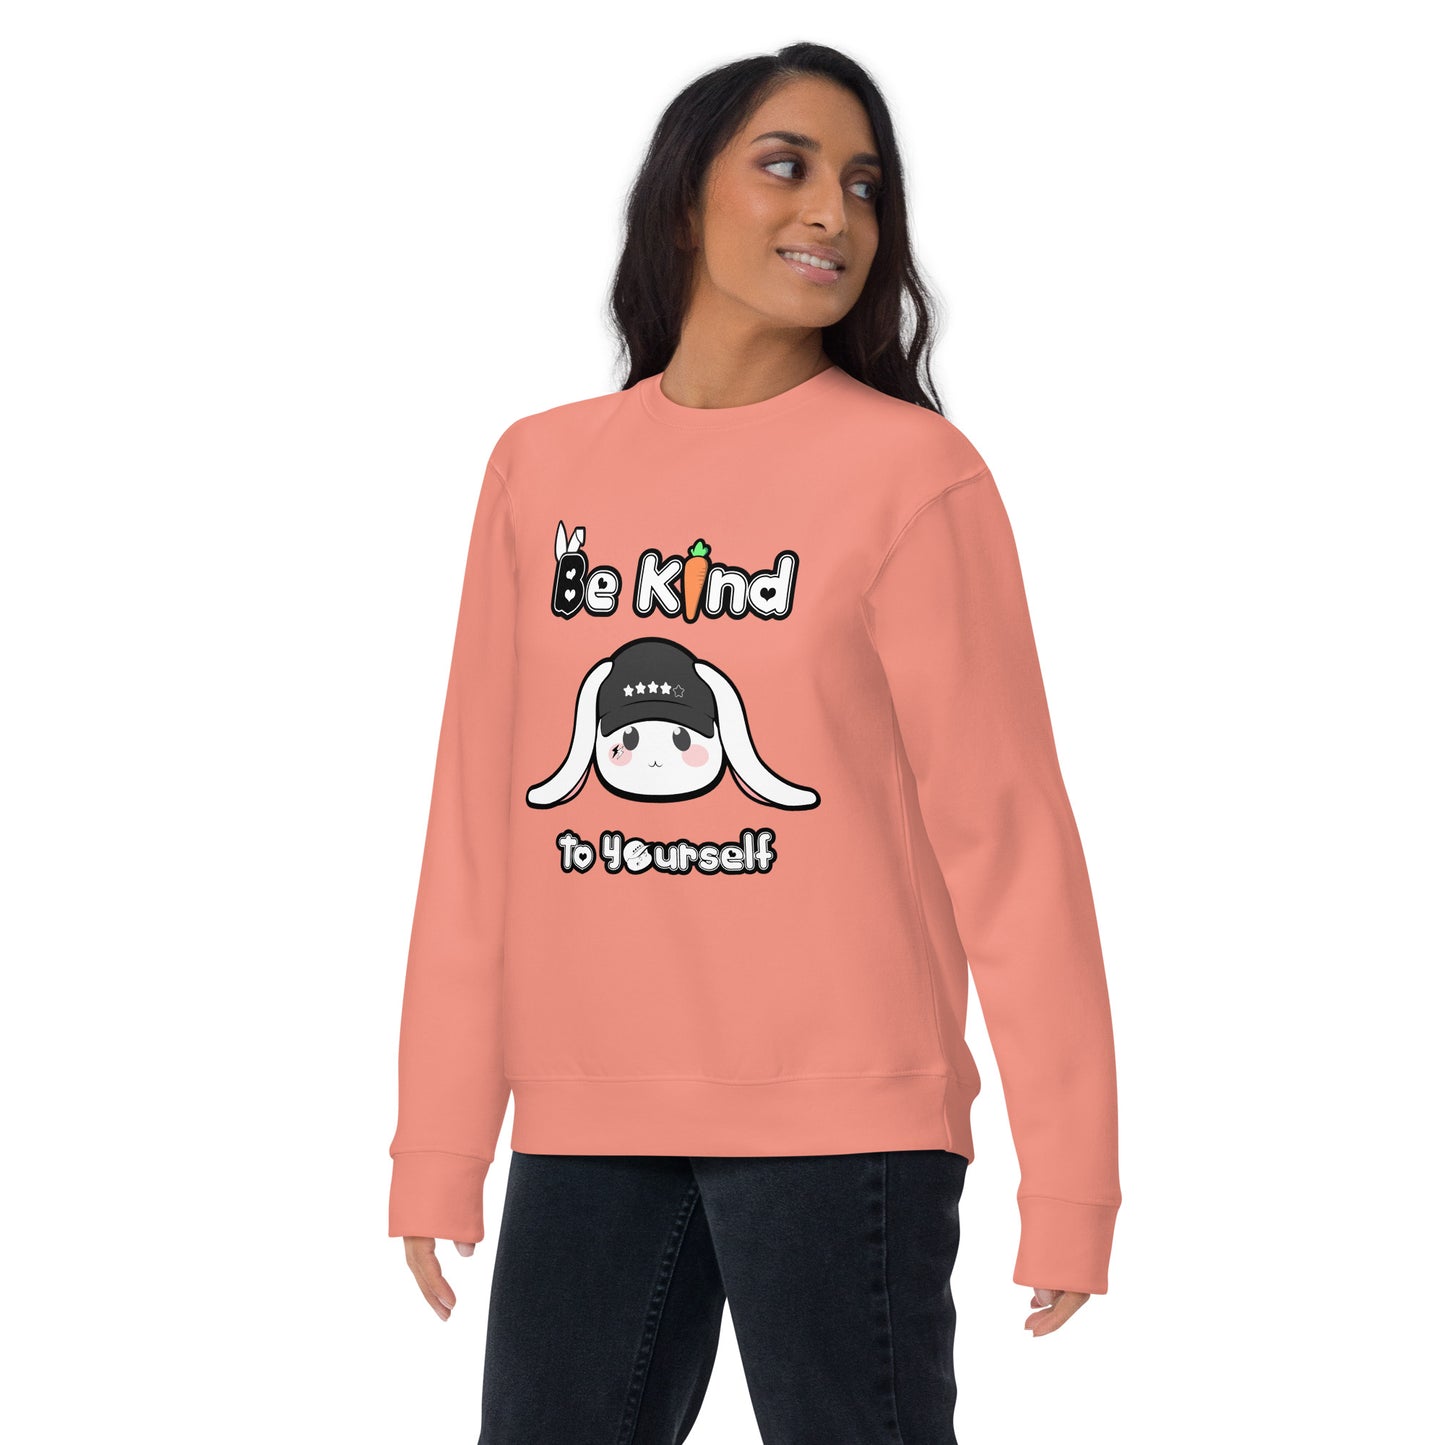 Be Kind to Yourself - Unisex Sweatshirt